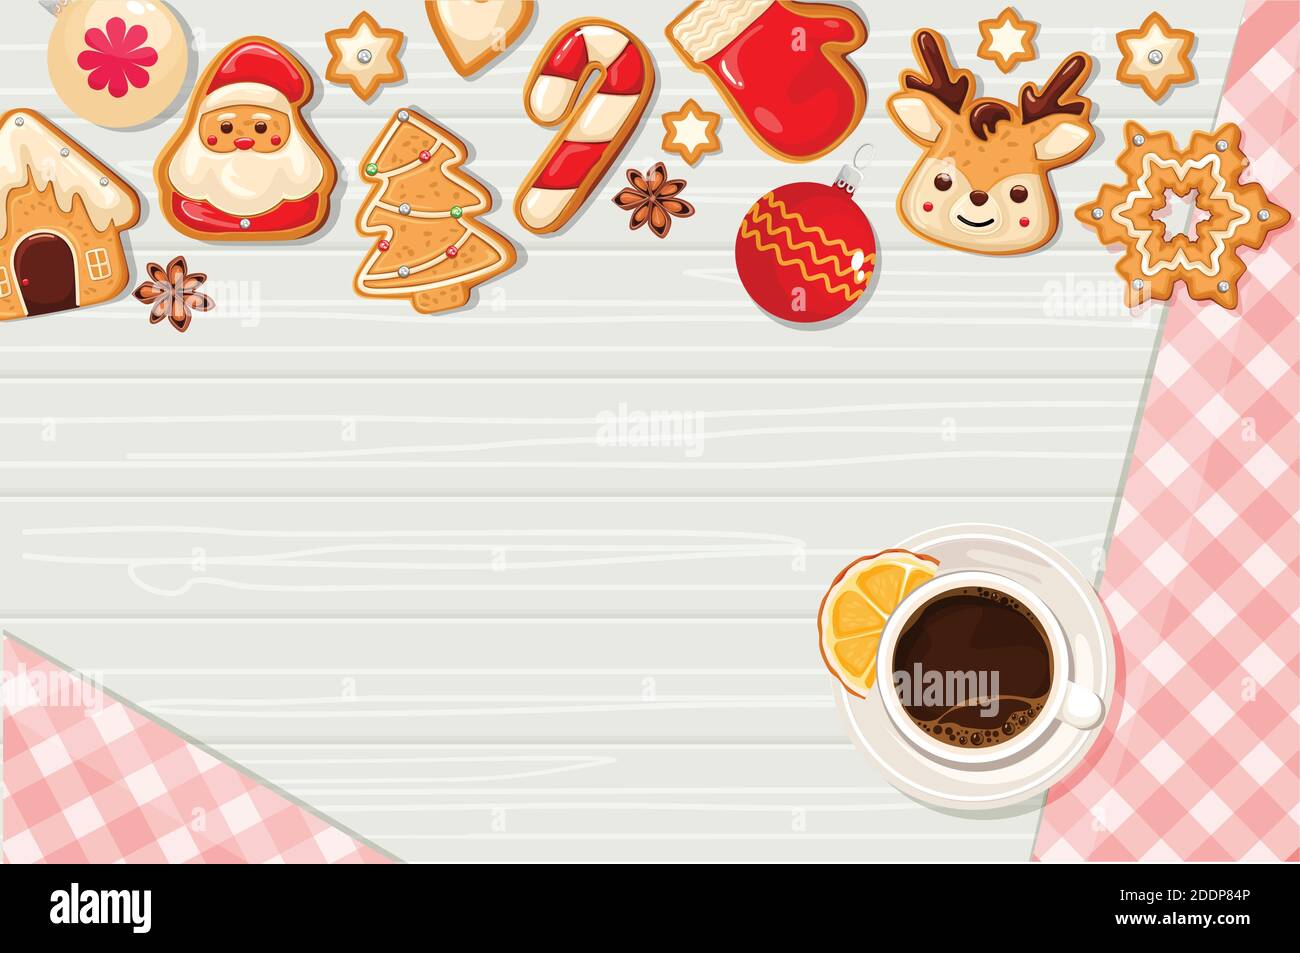 Weihnachtsplätzchen mit Sahnehäubchen und Kaffee auf Holzhintergrund, Draufsicht. Weihnachten, Neujahr. Vektorgrafik Stock Vektor